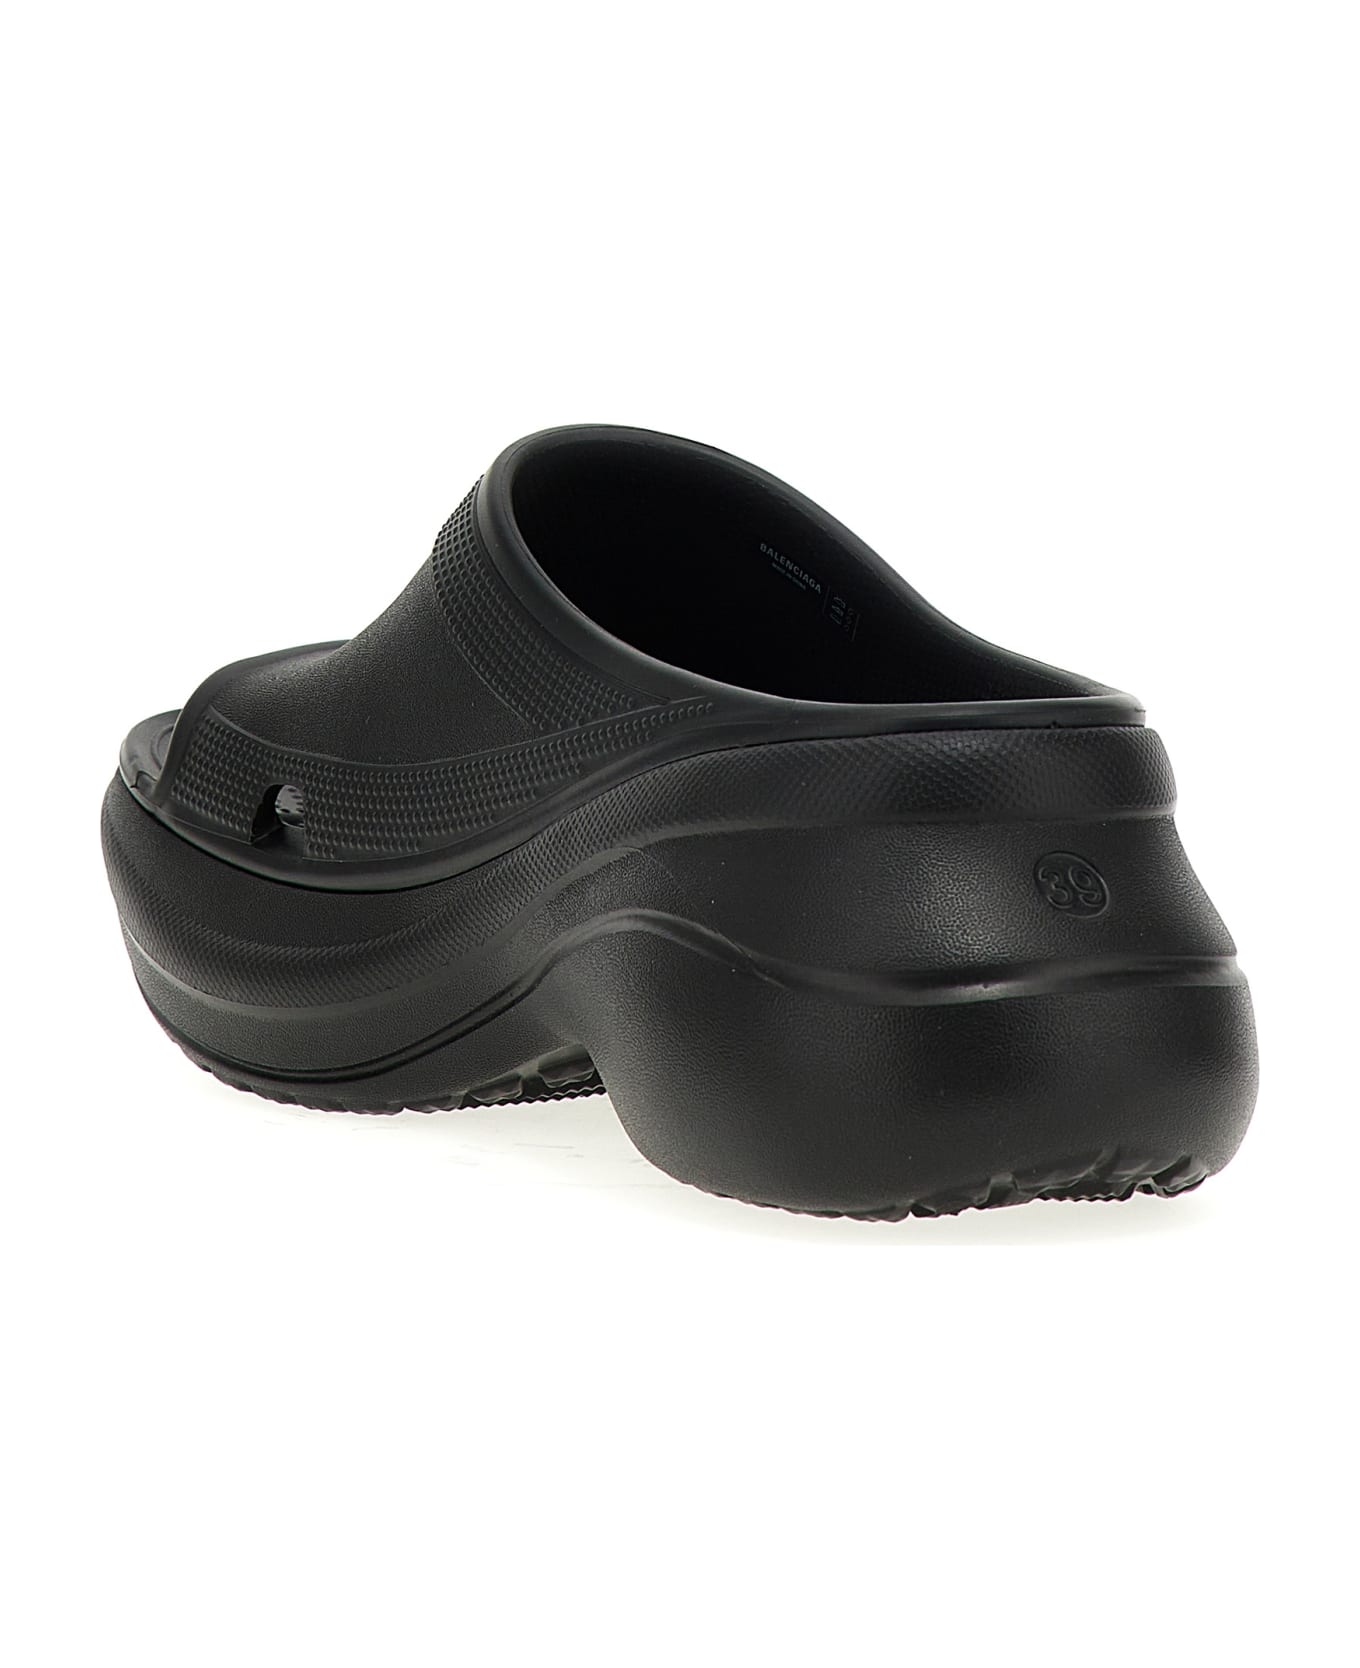 Balenciaga Crocs Platform Sandals - Black サンダル